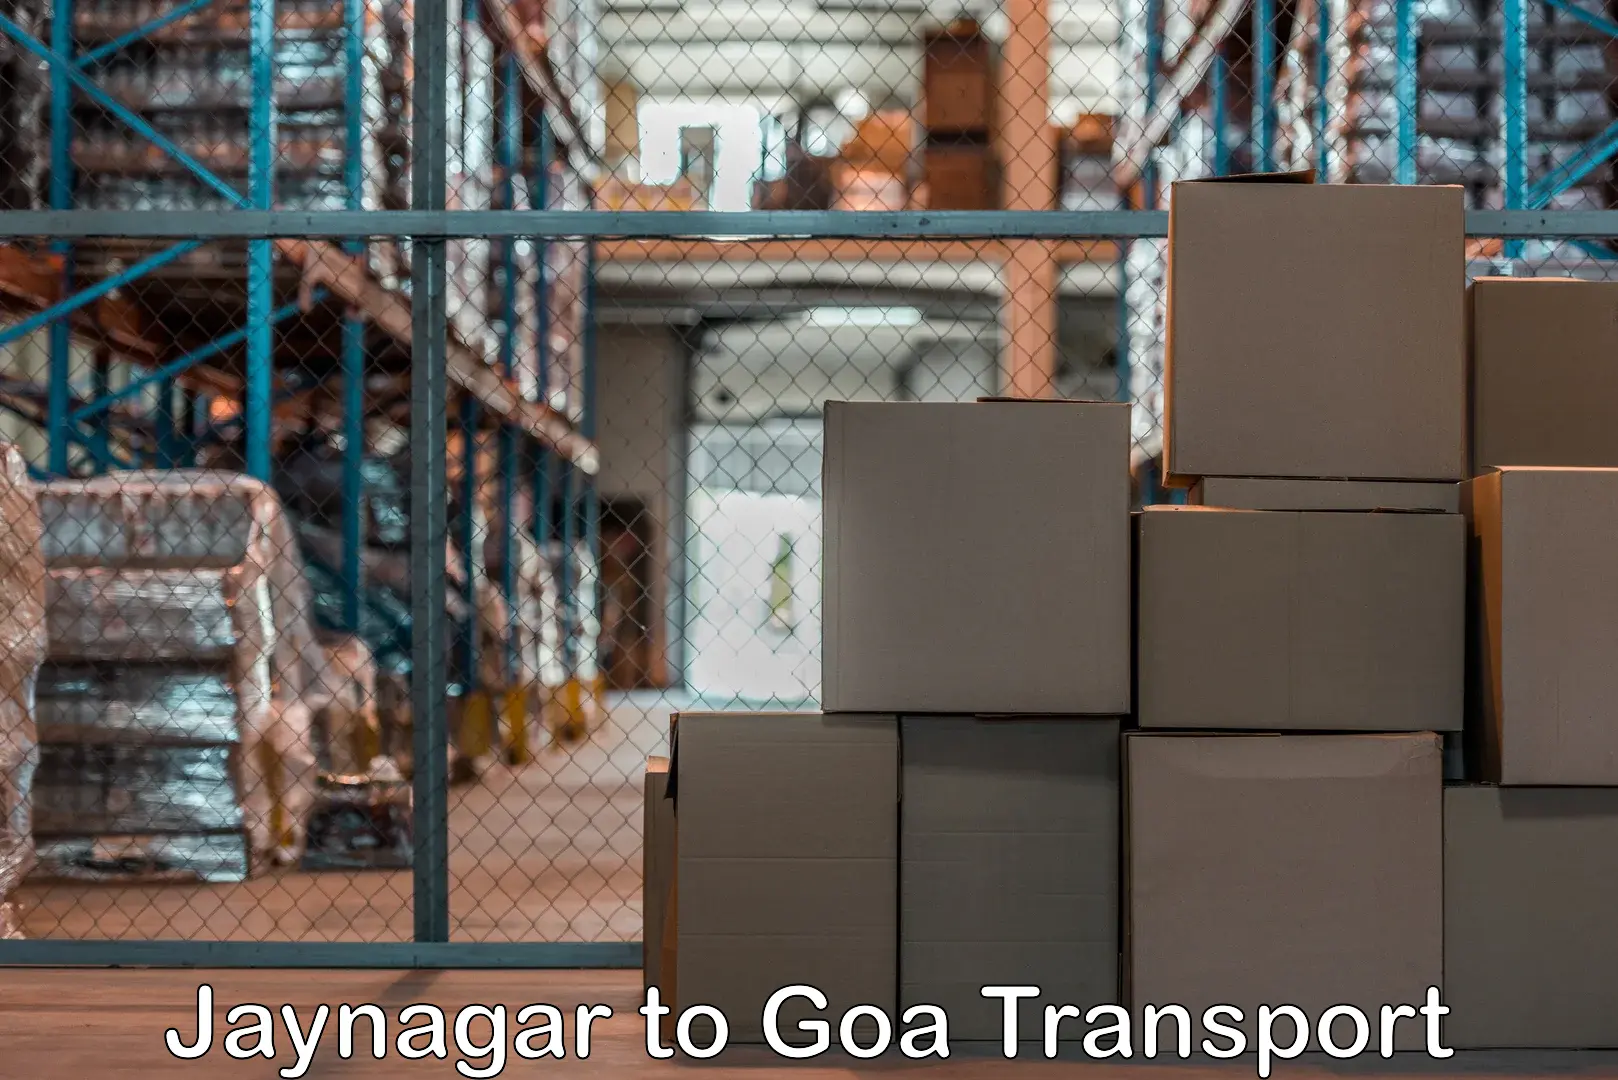 Furniture transport service Jaynagar to Goa